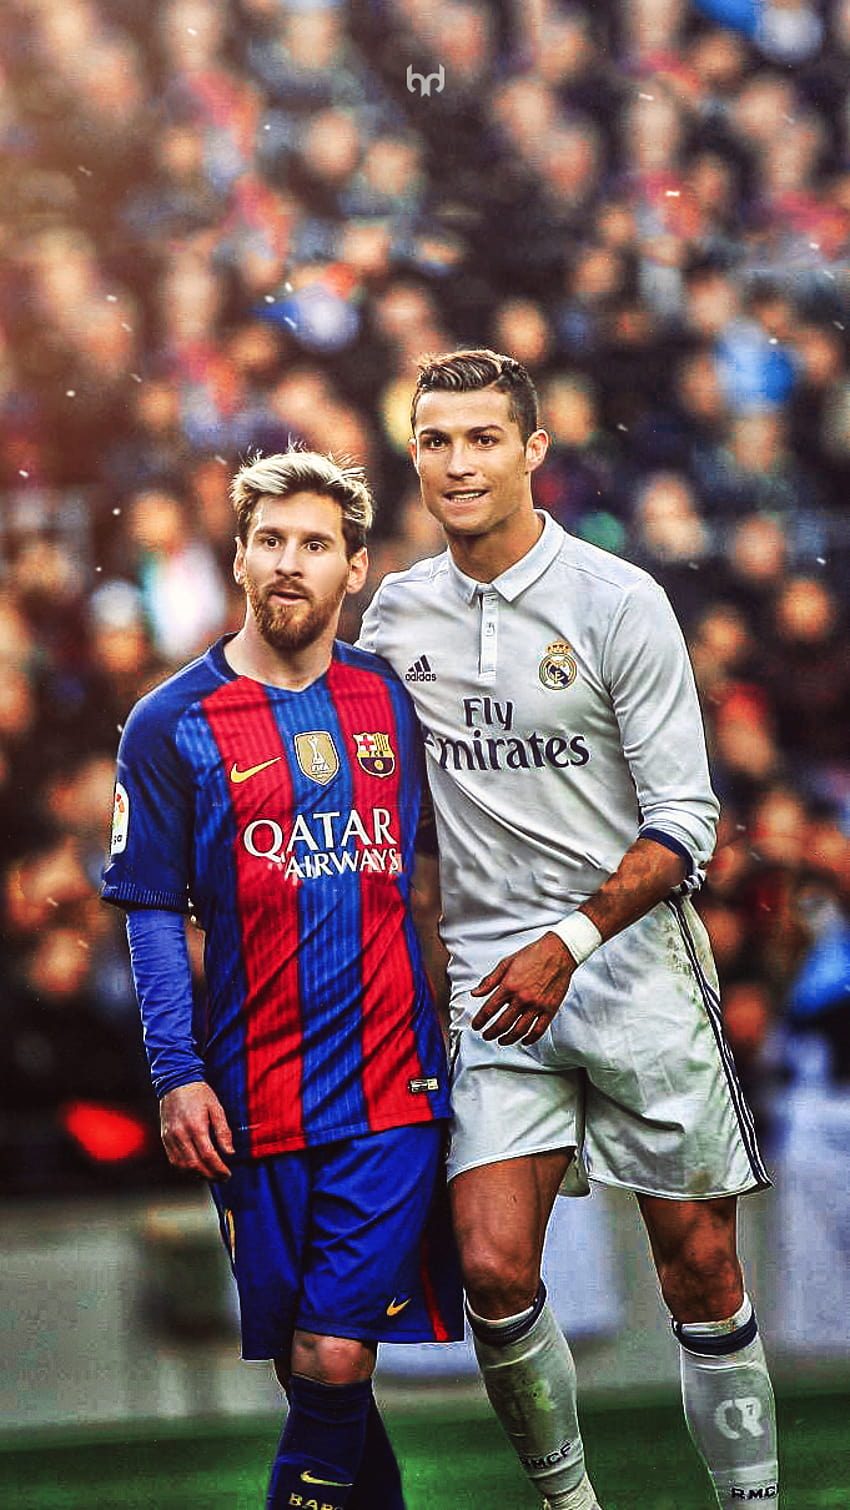 Cả Ronaldo và Messi đều là những tay săn bàn vĩ đại trong lịch sử bóng đá. Một bức ảnh wallpaper iPhone kết hợp hai cầu thủ này là một điều gì đó tuyệt vời. Hãy đón xem để thấy được cảm giác thăng hoa khi xem hai ngôi sao sáng nhất trên sân cùng nhau.